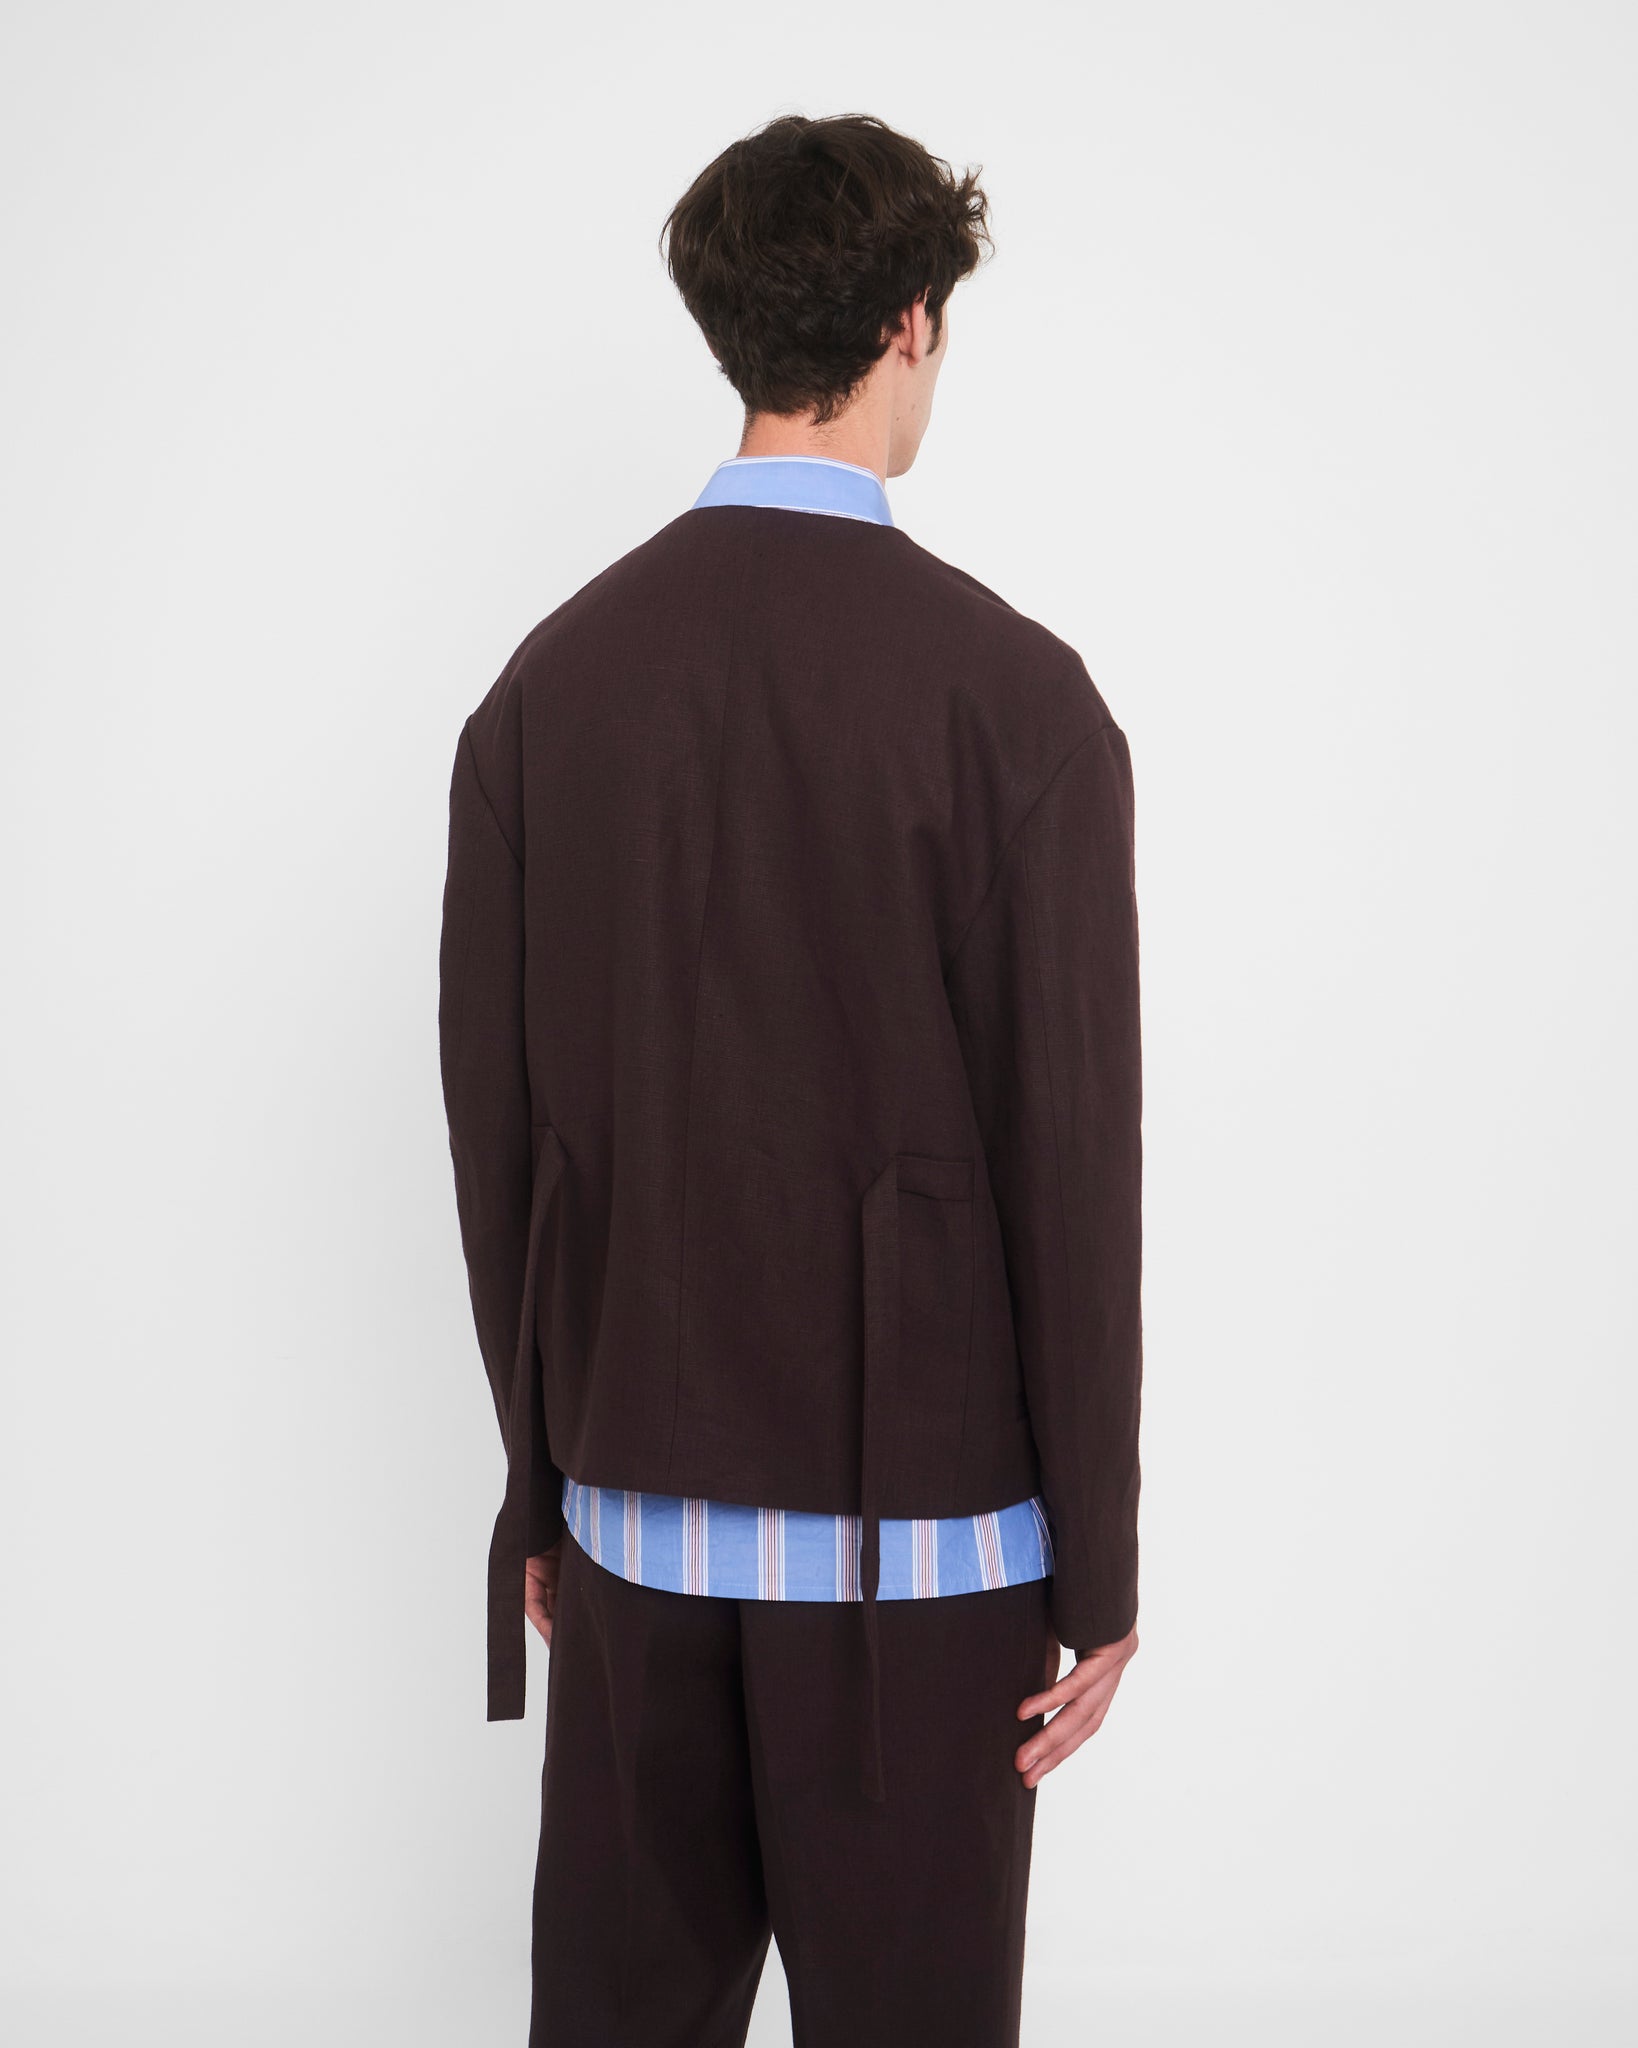 BALBEC jacket (Unisex) - PREORDER